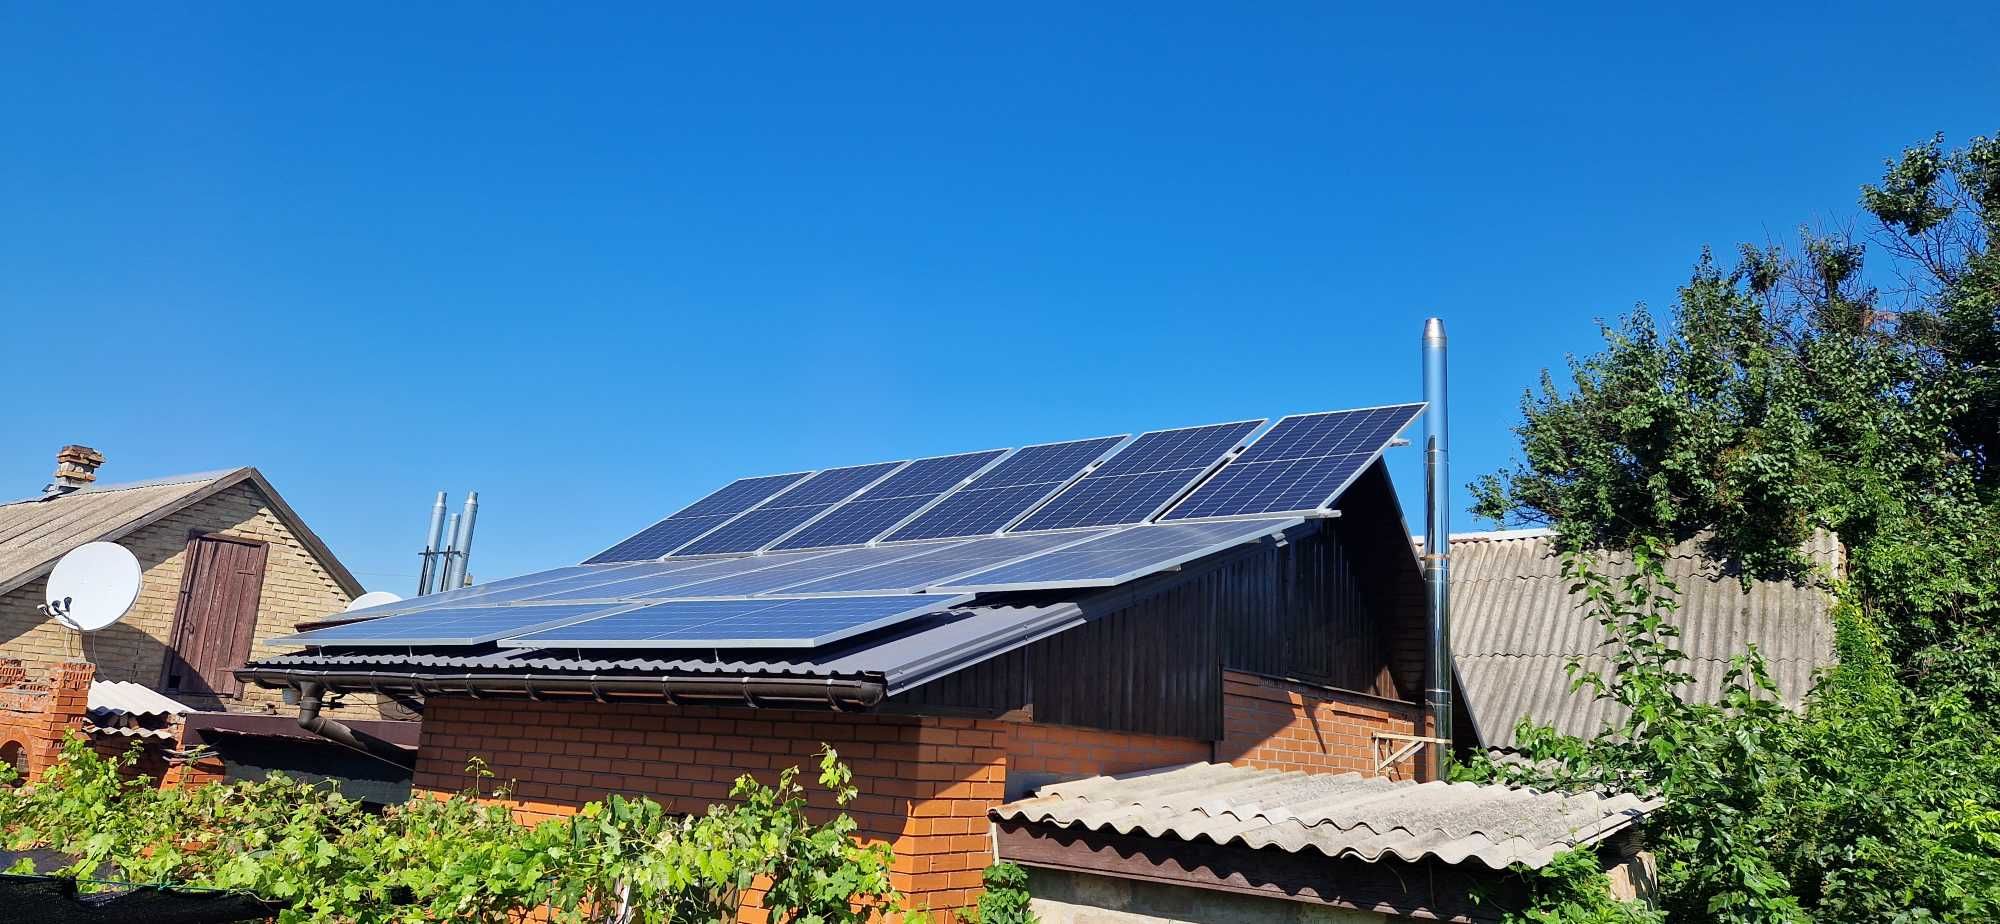 Солнечные электростанции,солнечные панели